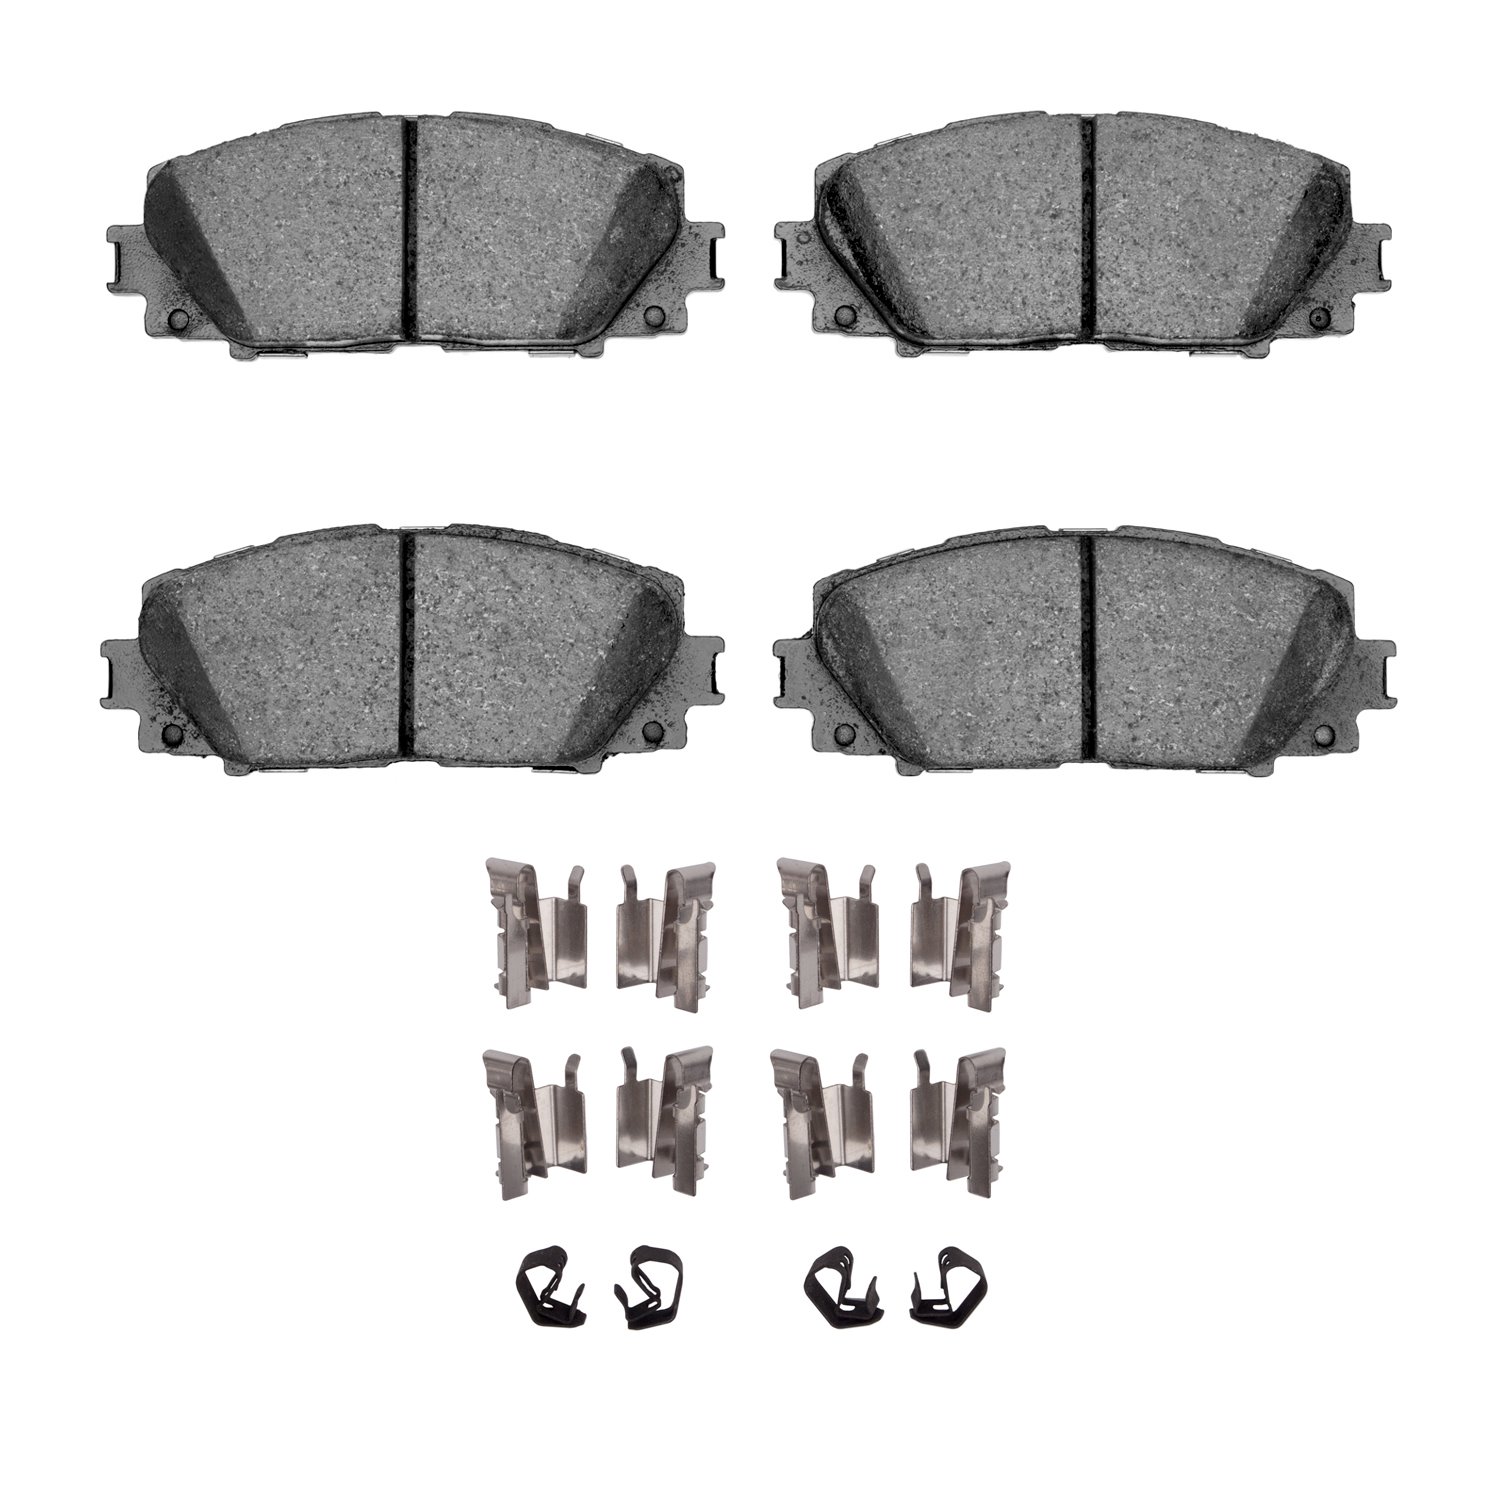 1310-1184-01 3000-Series Ceramic Brake Pads & Hardware Kit, 2006-2019 Lexus/Toyota/Scion, Position: Front